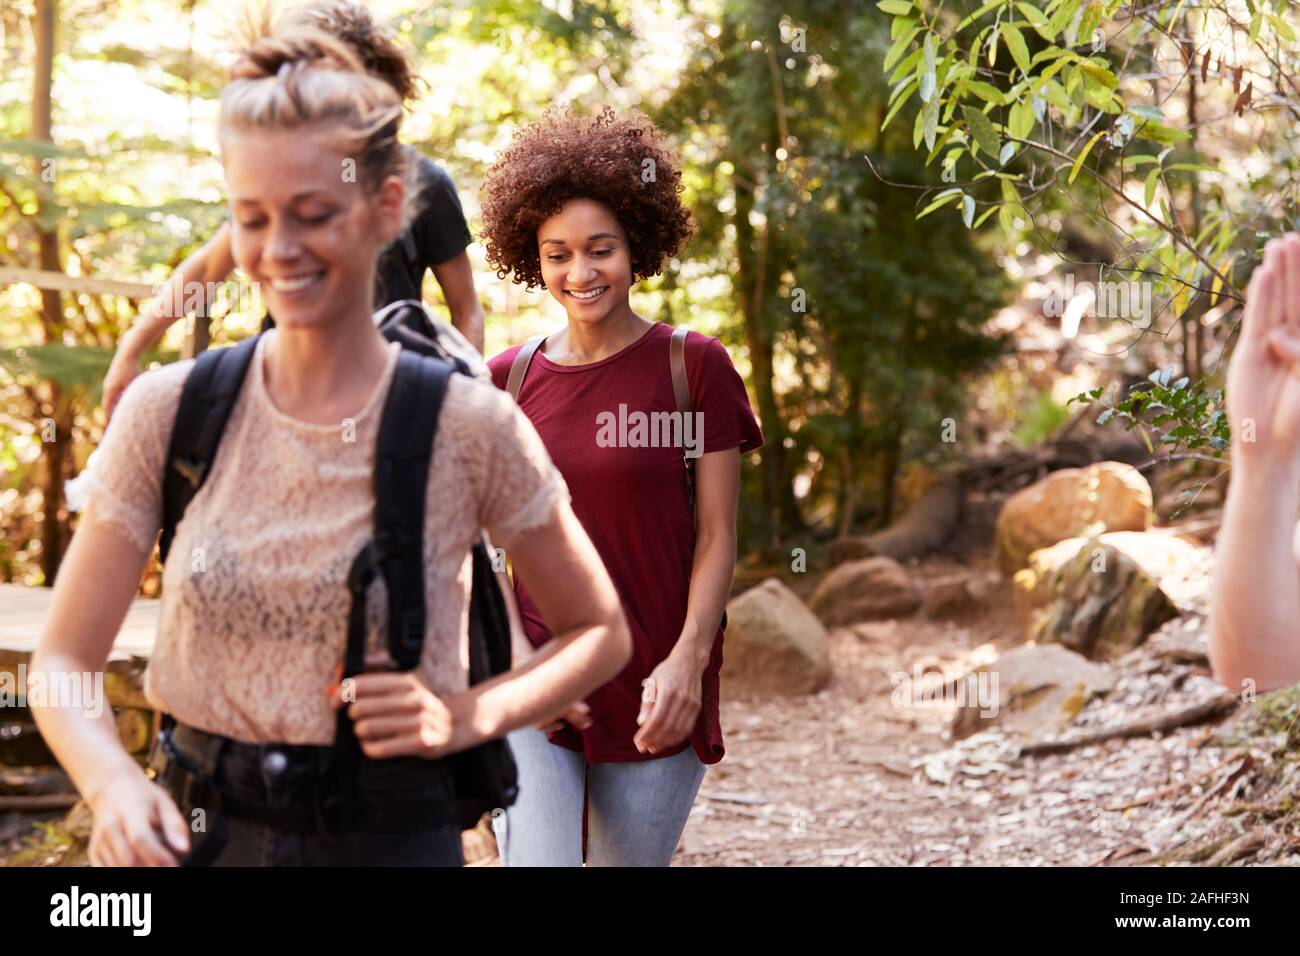 Novias milenaria caminando juntos durante una caminata en el bosque, cerrar Foto de stock